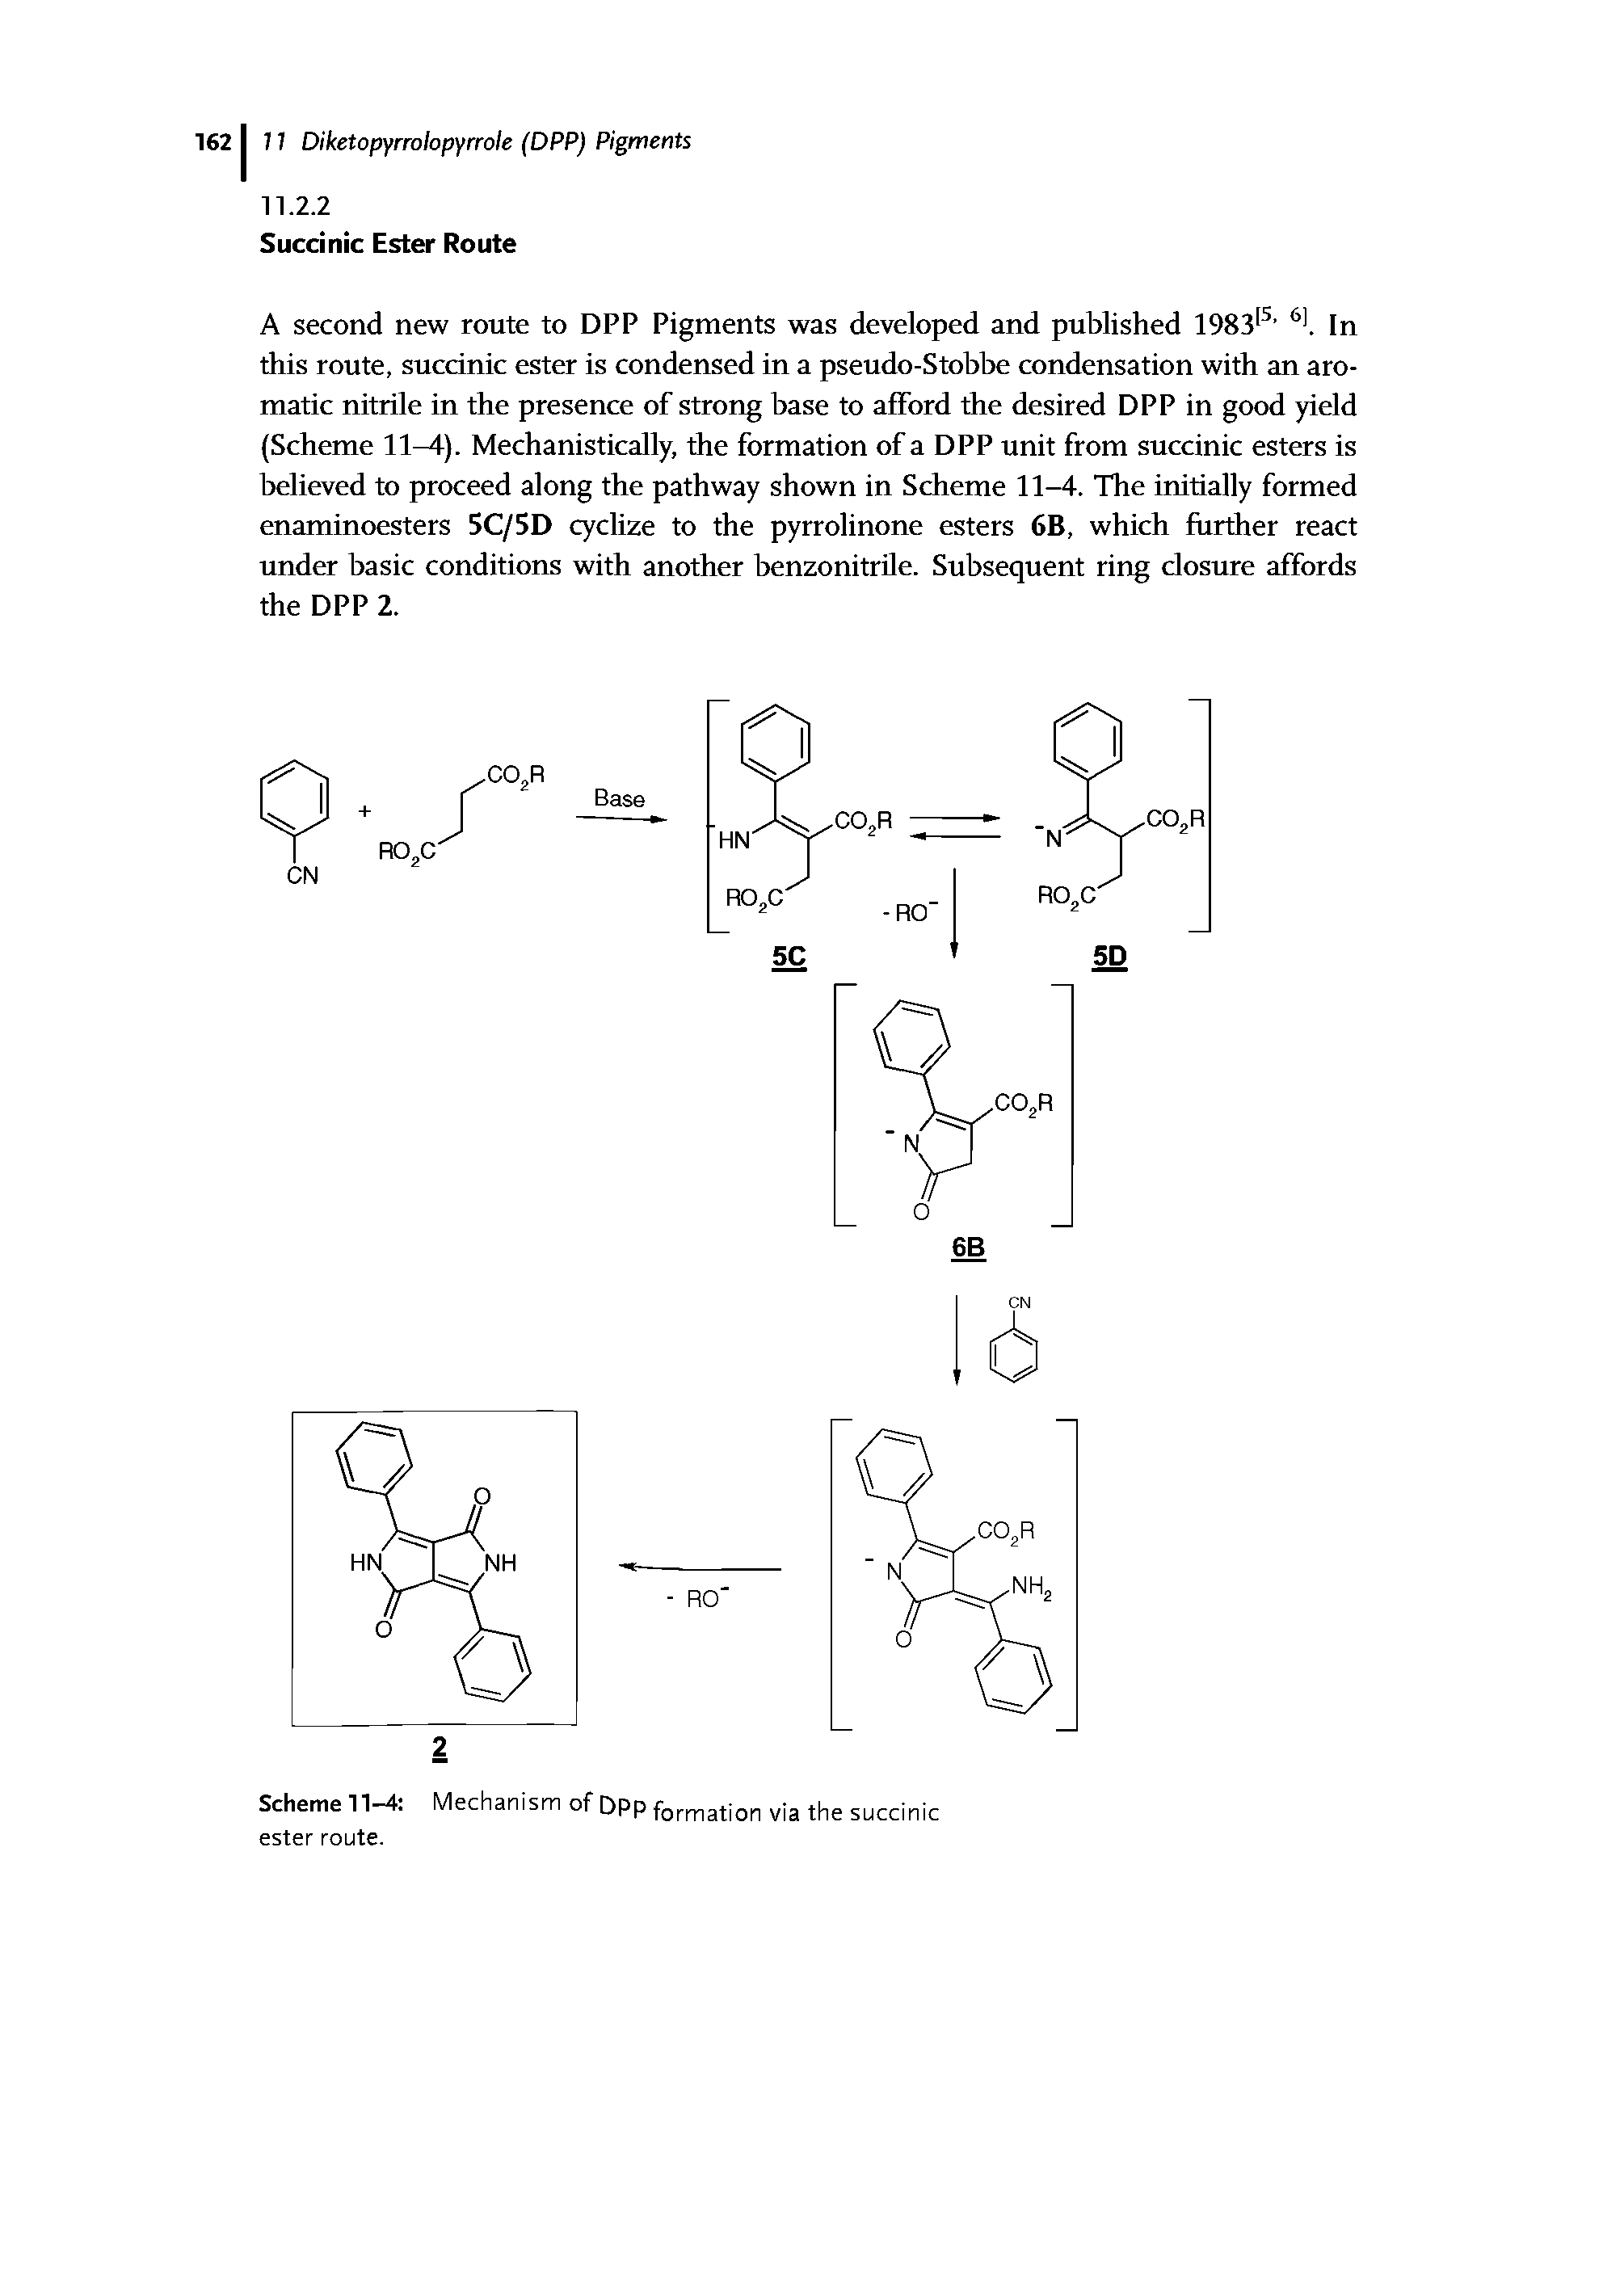 Scheme 11-4 Mechanism of DPP formation via the succinic ester route.